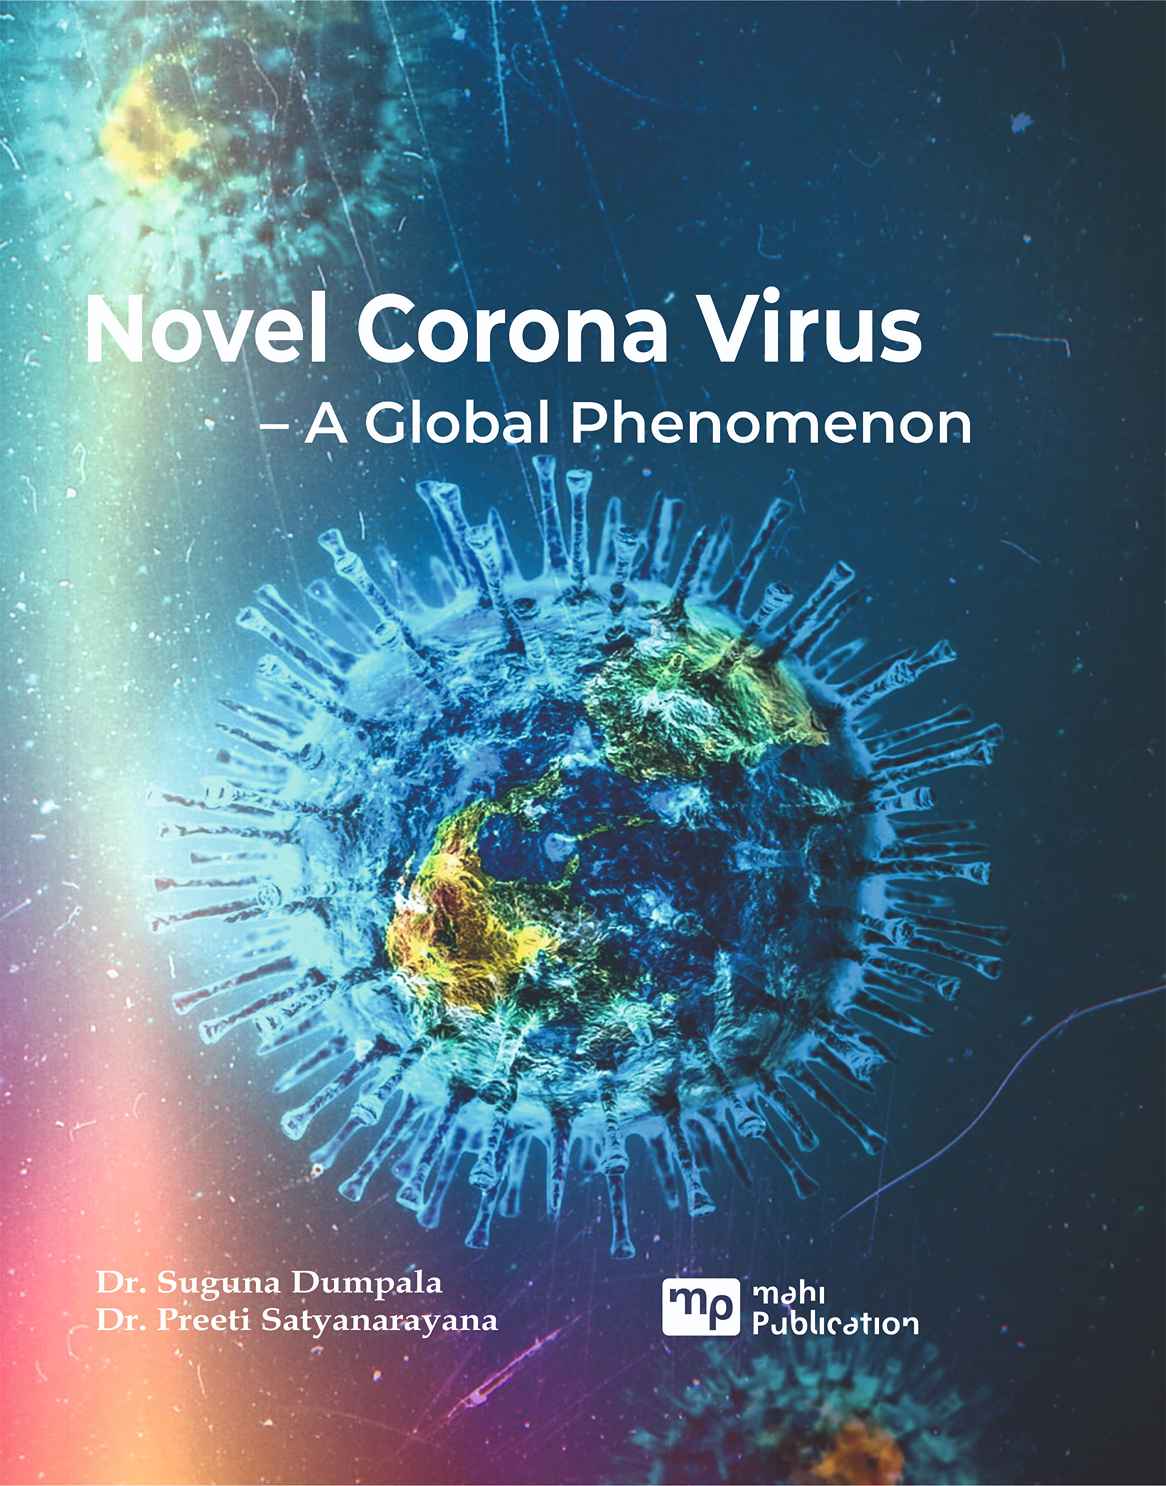 NOVEL CORONA VIRUS – A Global Phenomenon